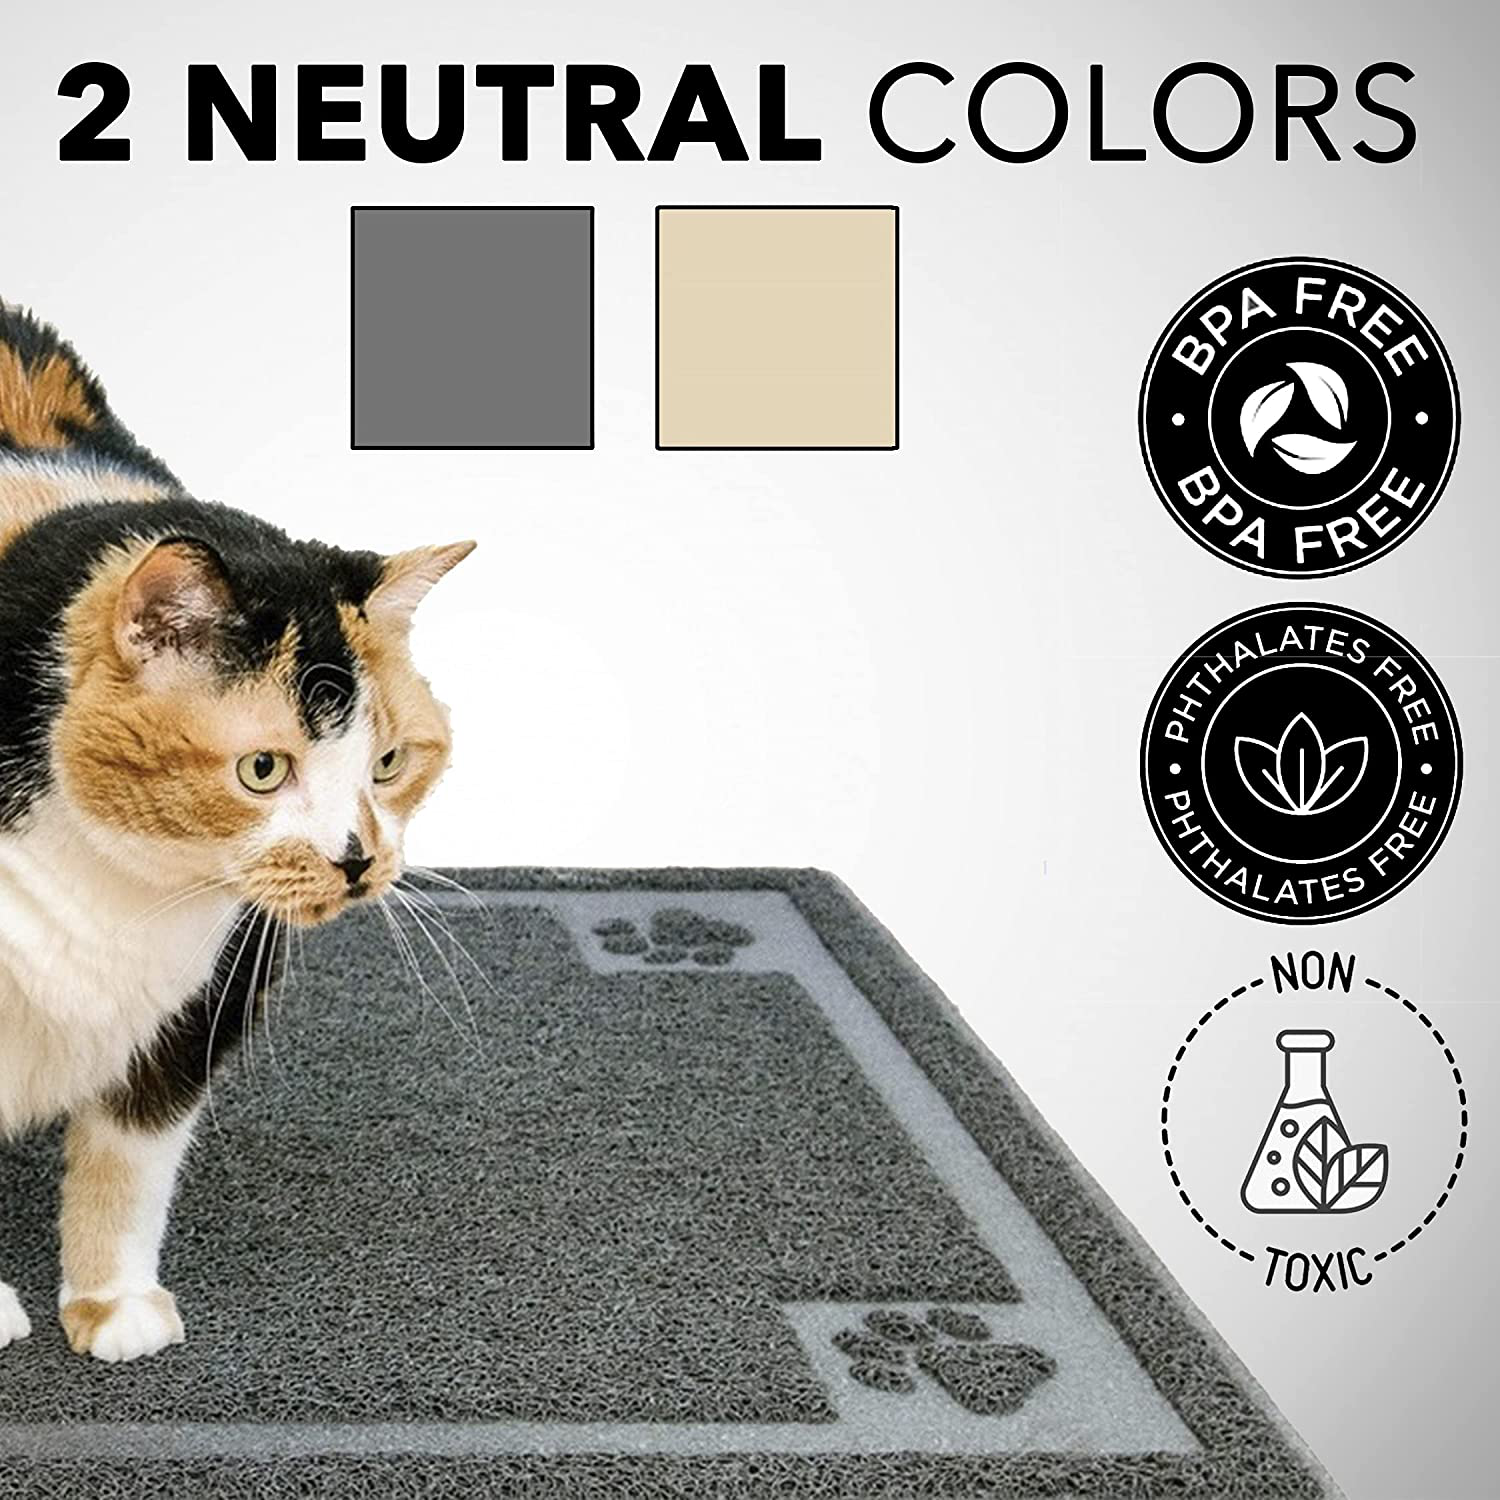 PETUPPY petuppy premium durable cat litter mat, xl size 47x36